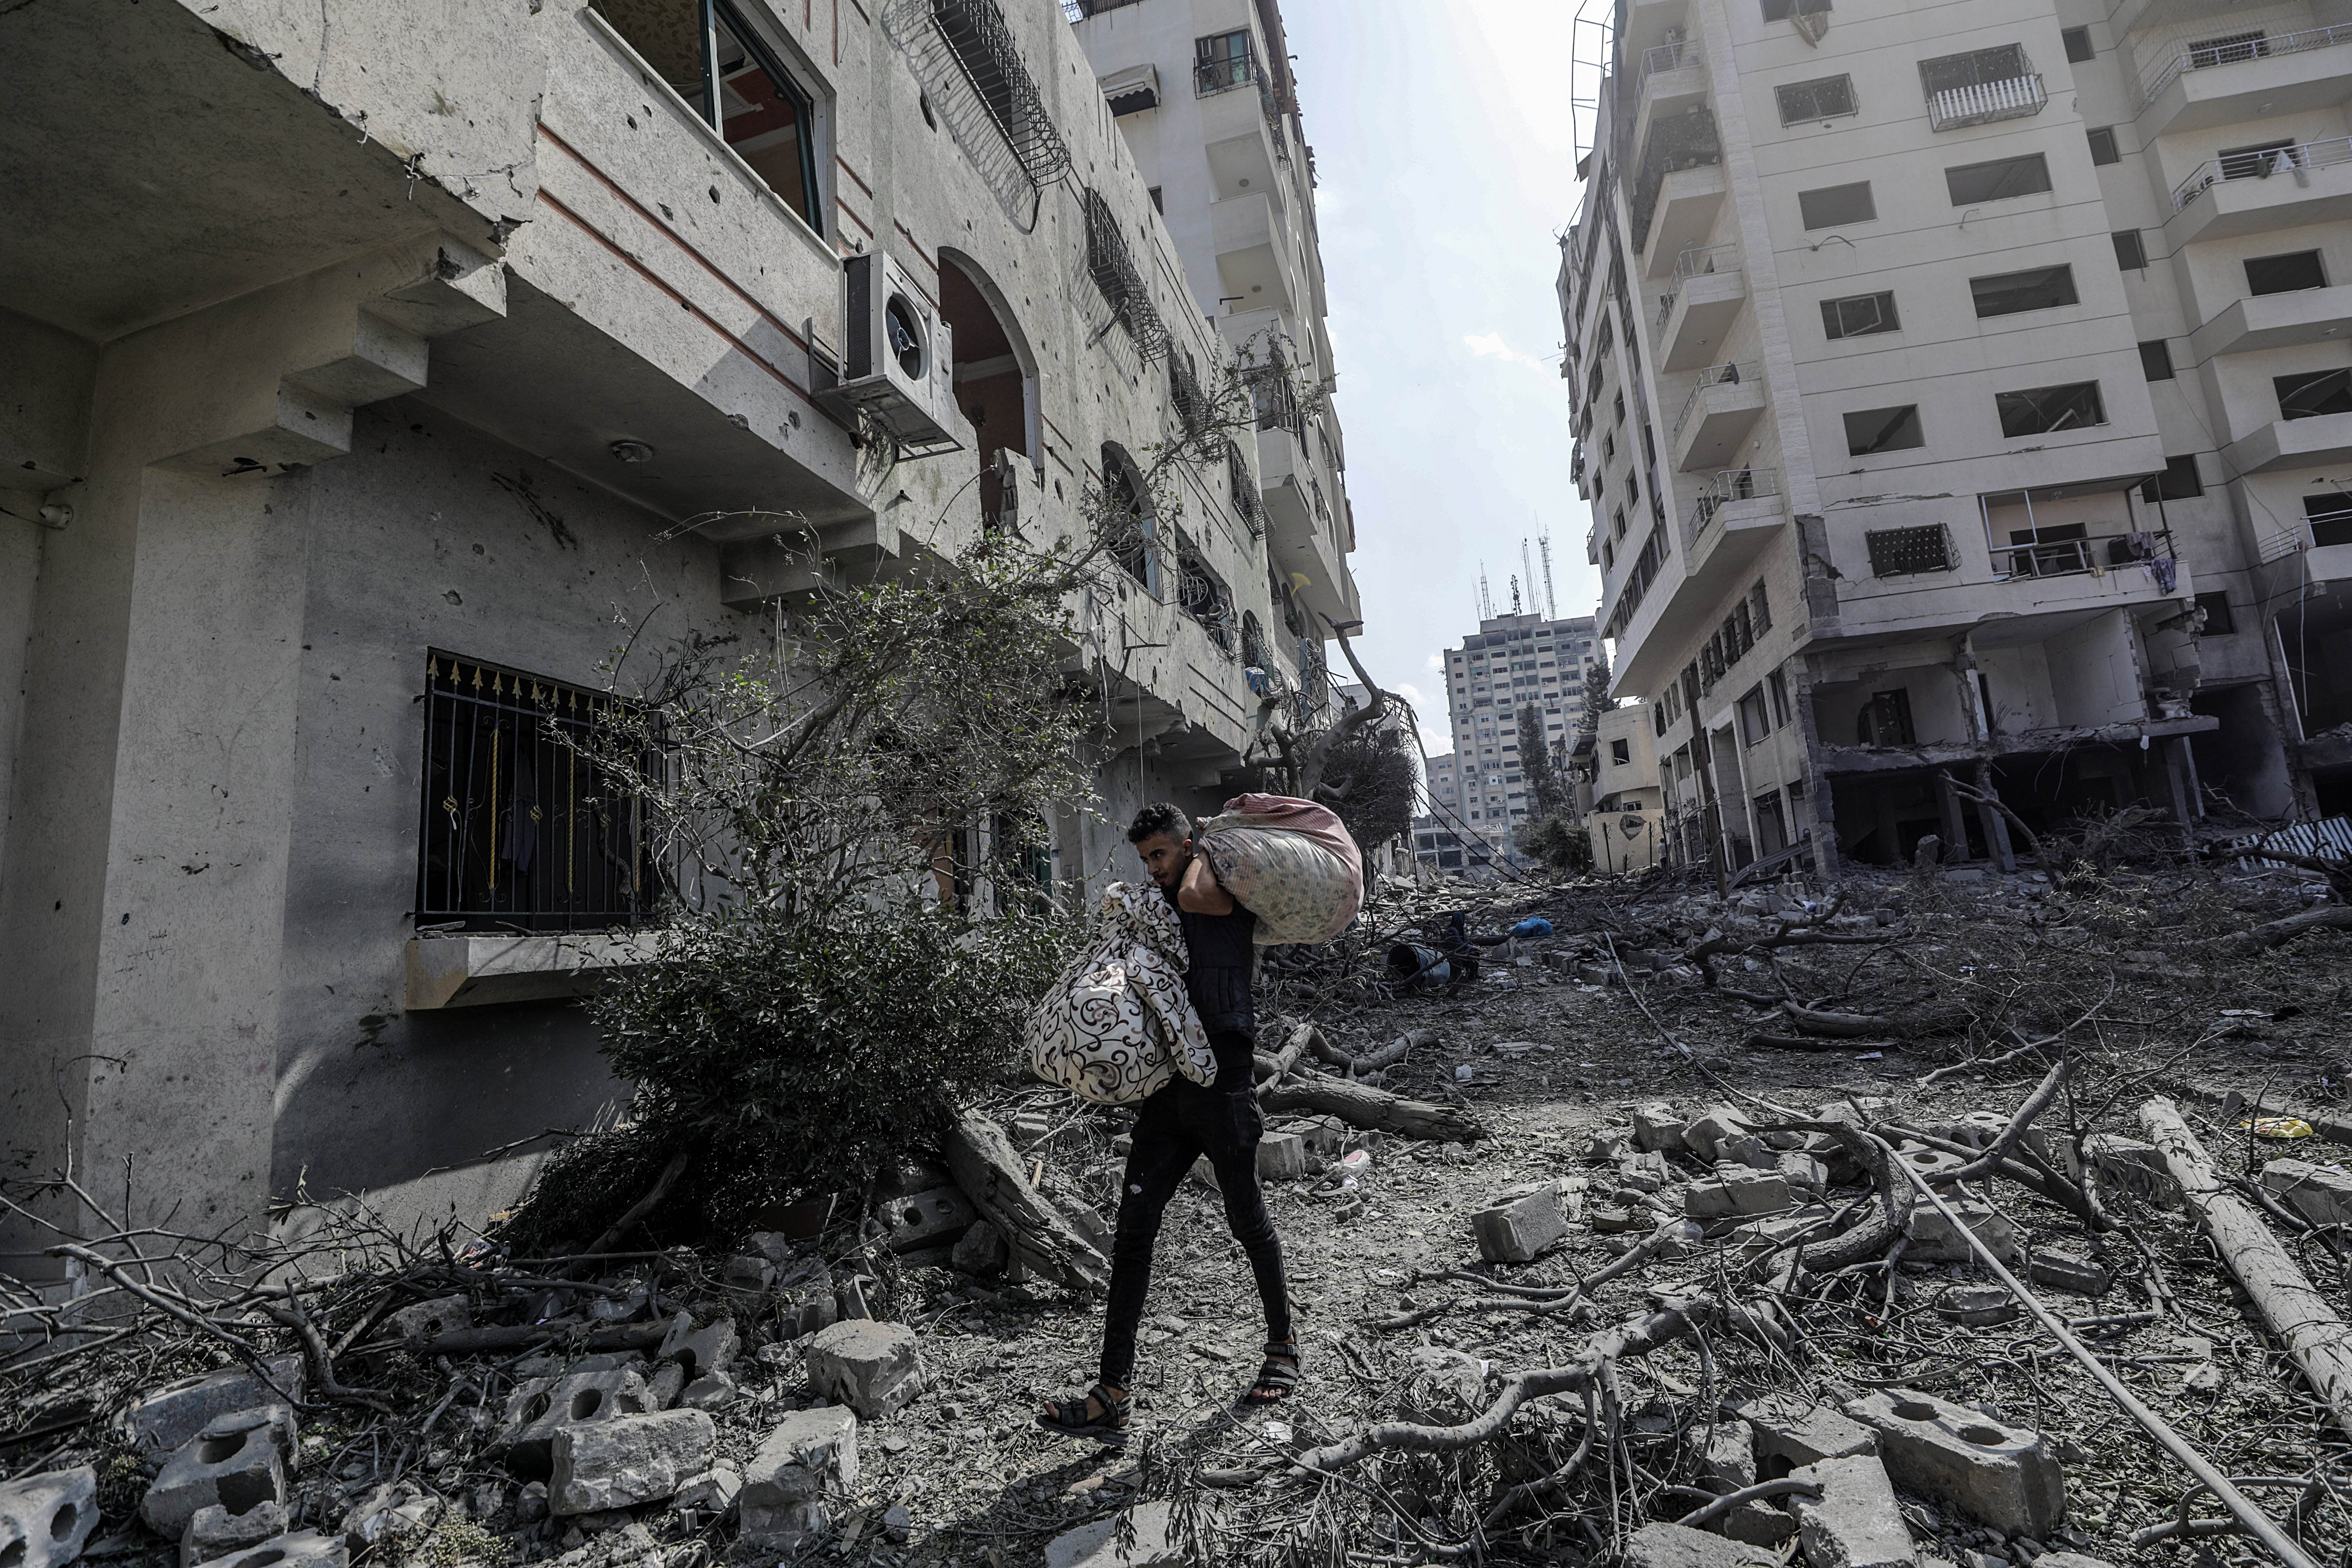 L'OMS demana crear un corredor humanitari per fer arribar ajuda a la població de Gaza